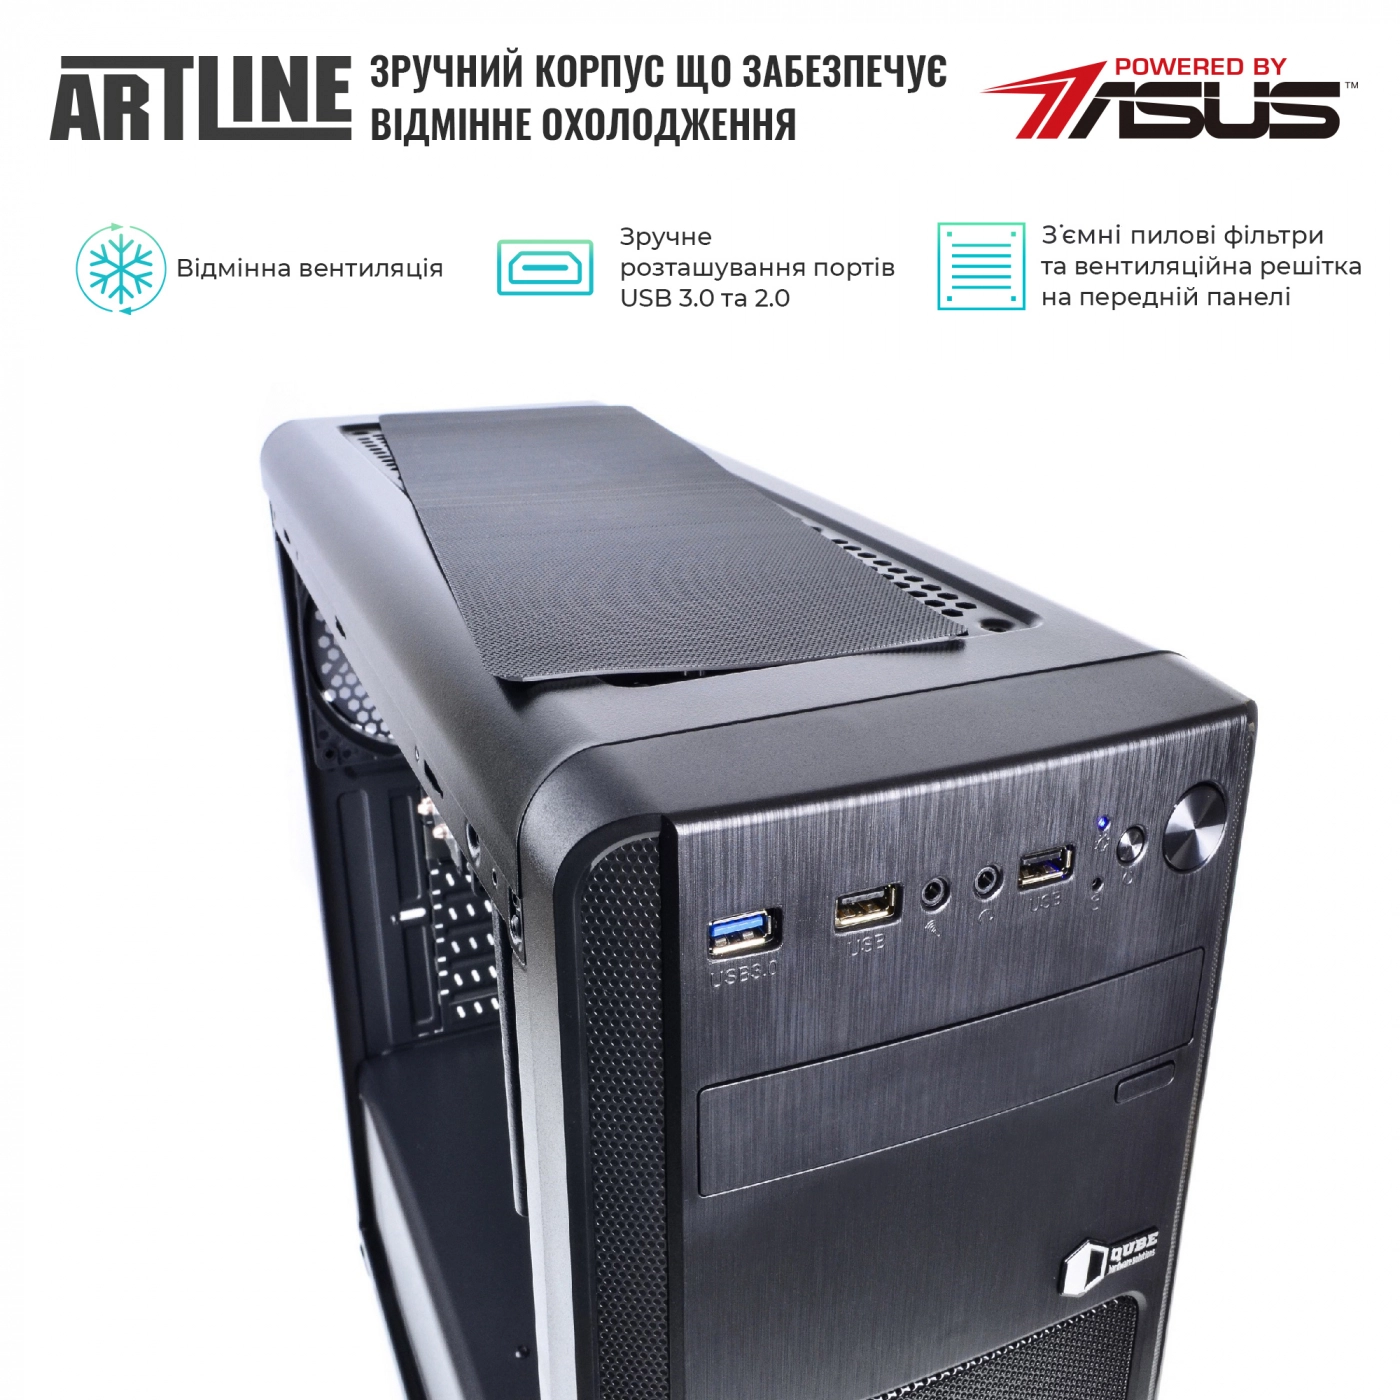 Купить Сервер ARTLINE Business T25v33 - фото 3